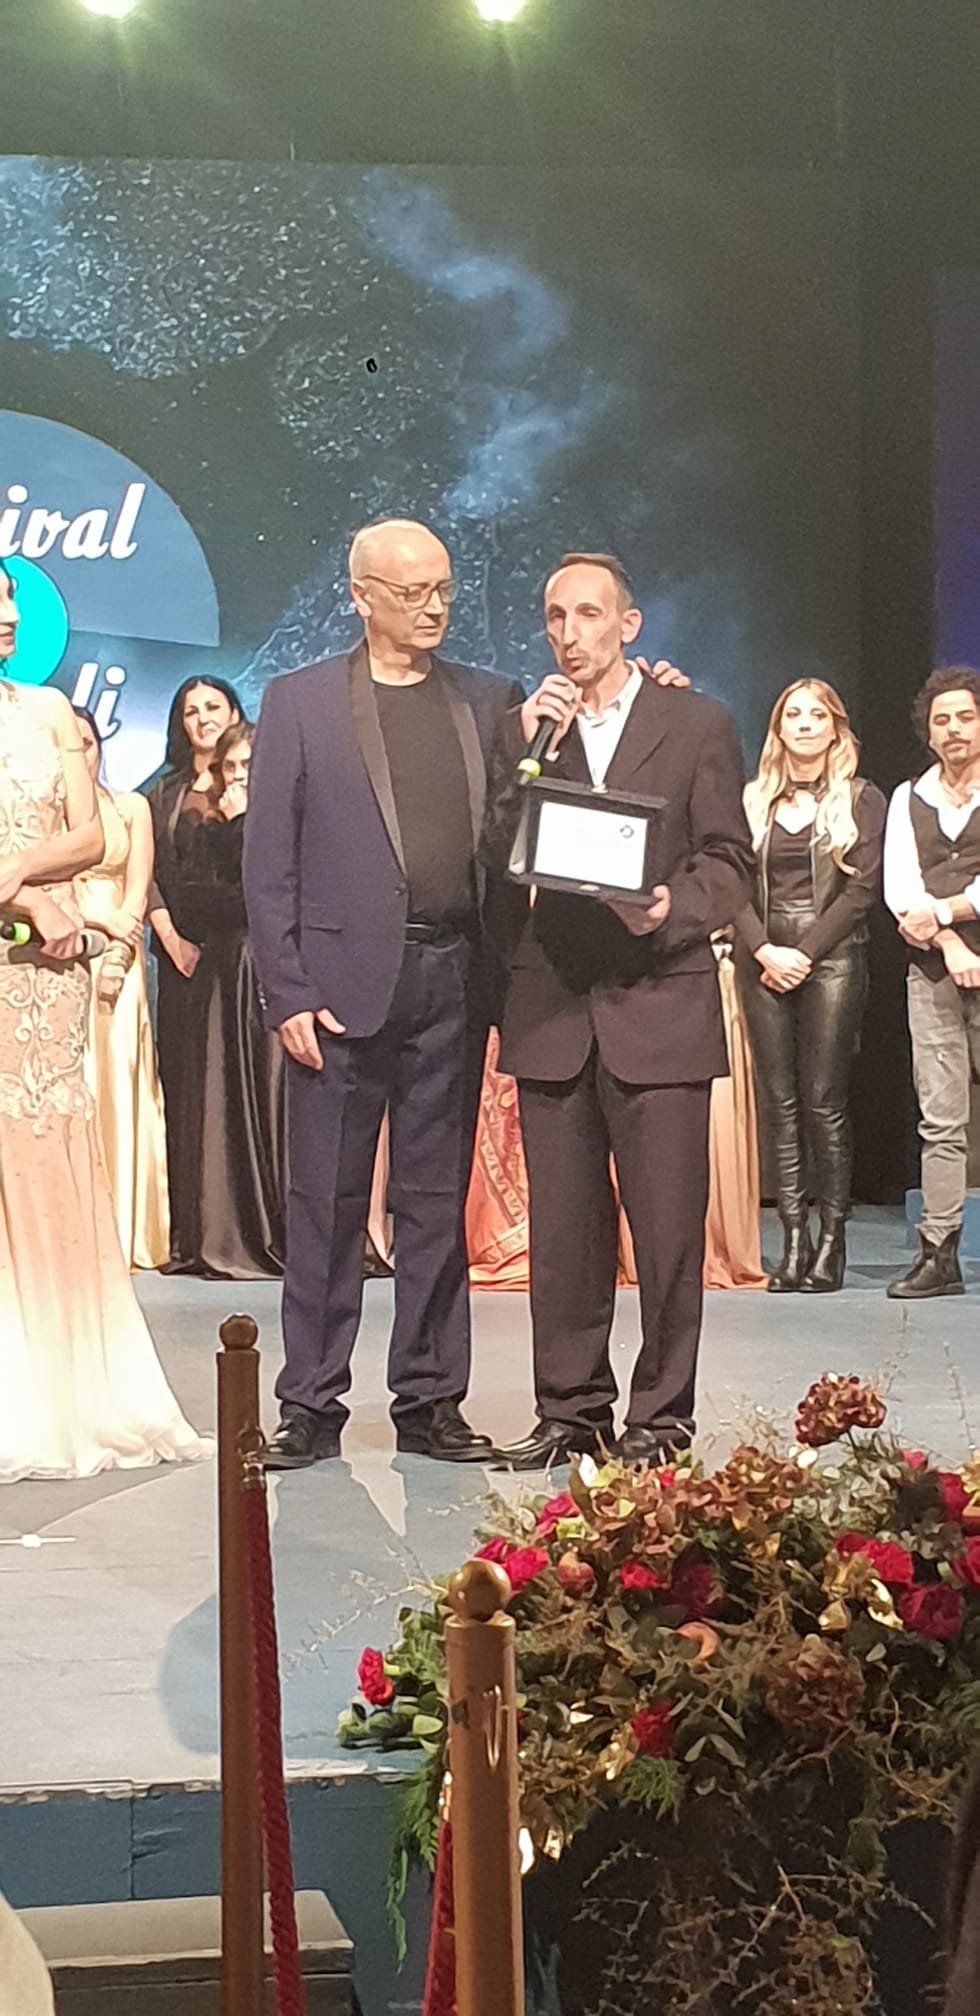 Premio speciale per Luca Maris al Festival di Napoli 2019